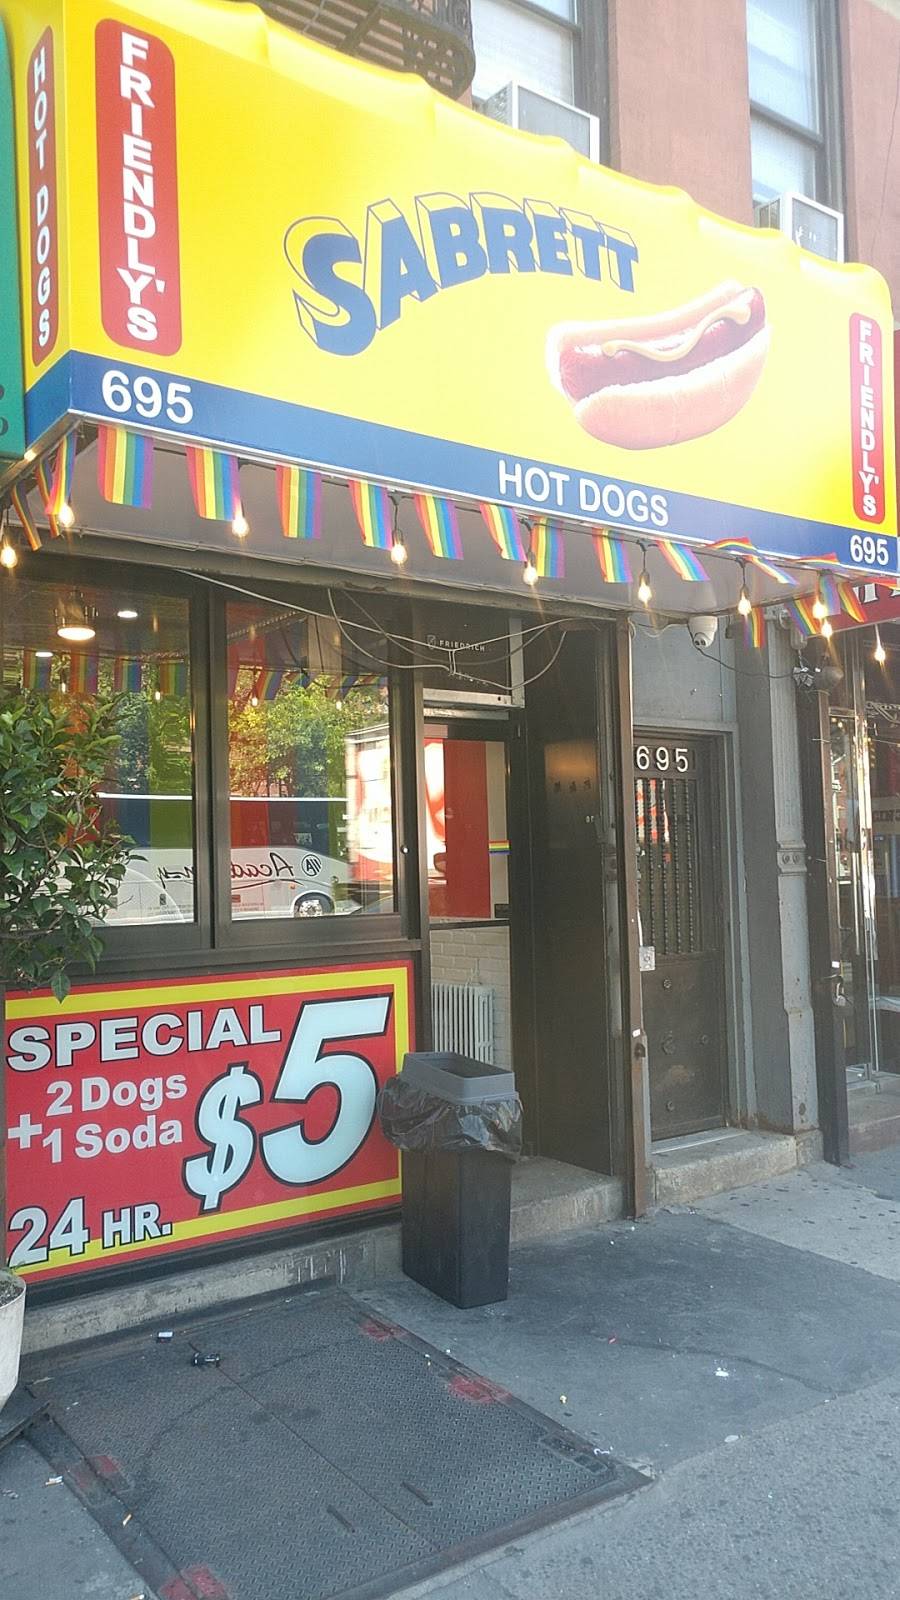 Friendlys Hot Dogs | restaurant | 695 10th Ave, New York, NY 10036, USA